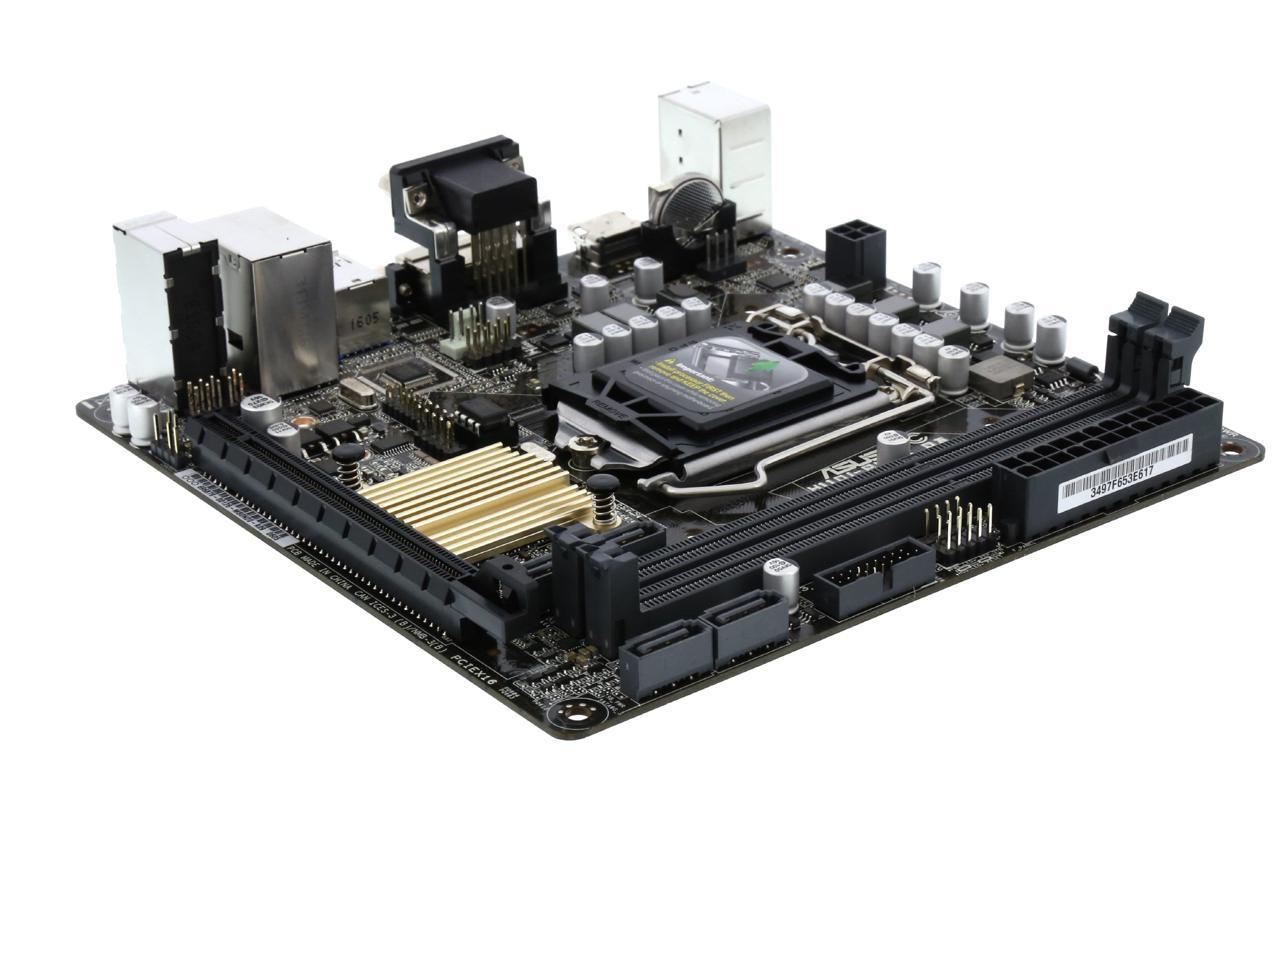 Asus H110i Plus D3 Csm Lga 1151 Mini Itx Intel Motherboard Newegg Com